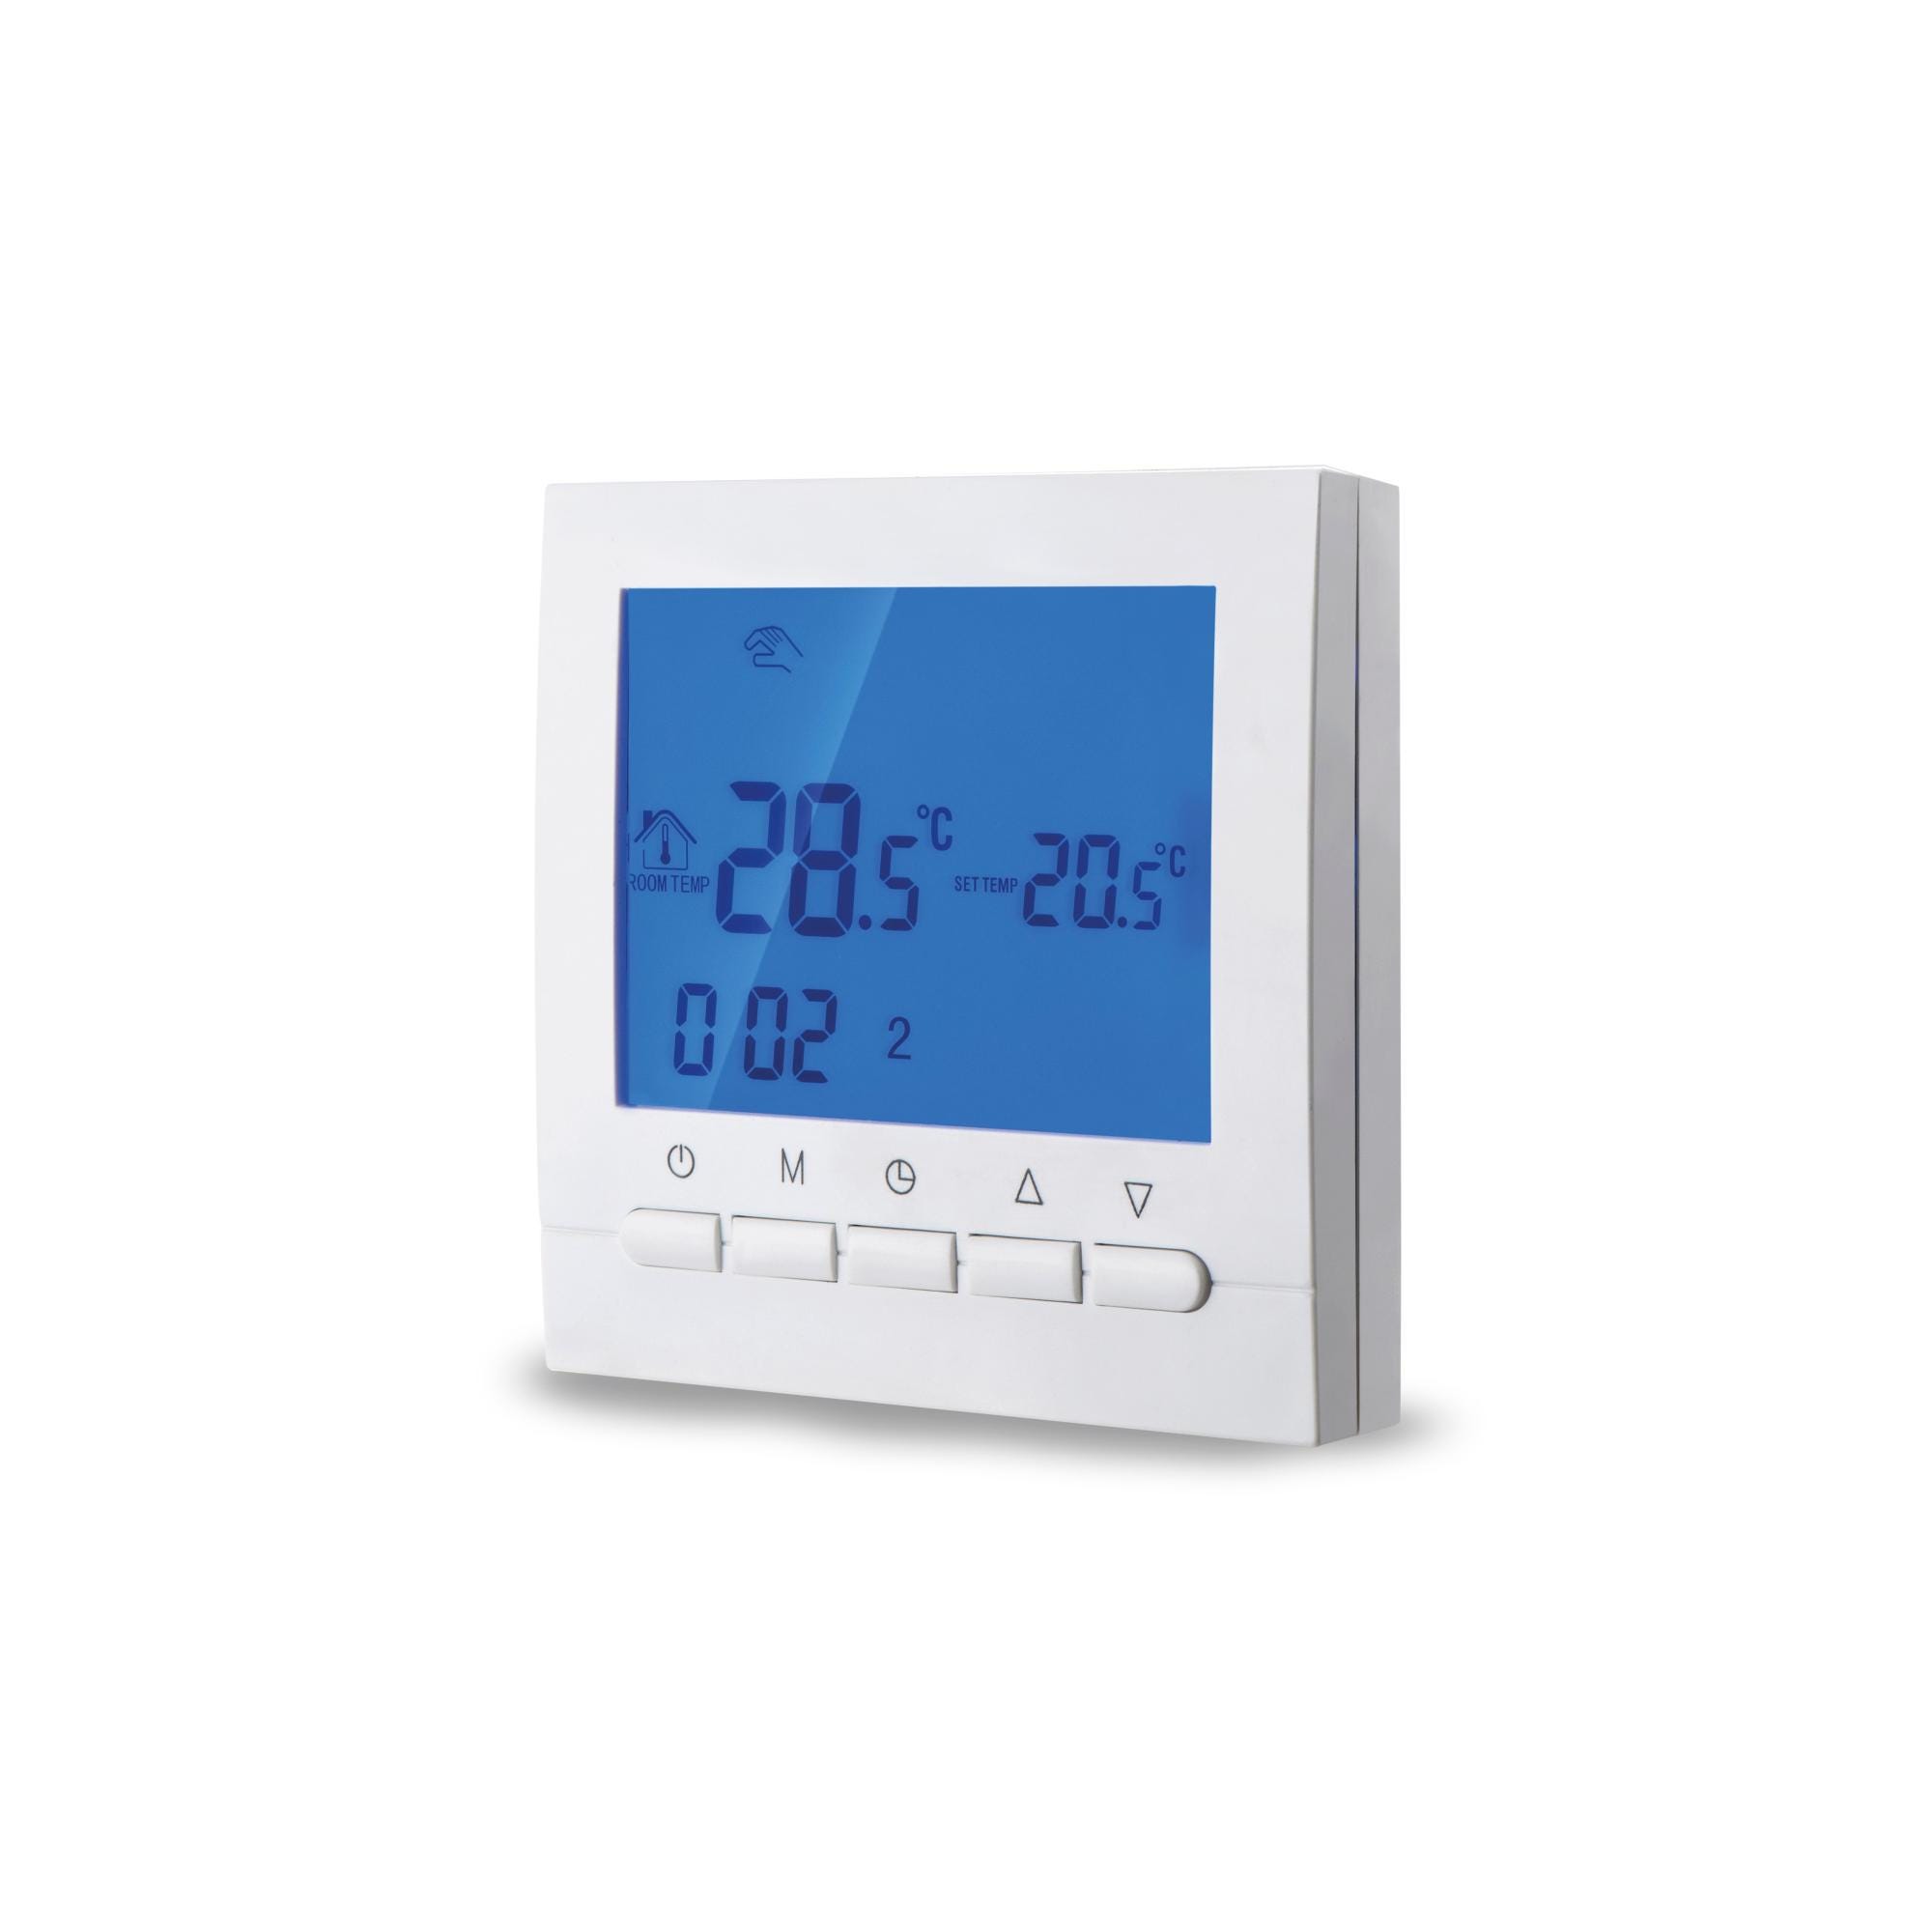 Termostatos de Calefacción  Termostatos Digitales y Analógicos – Garza